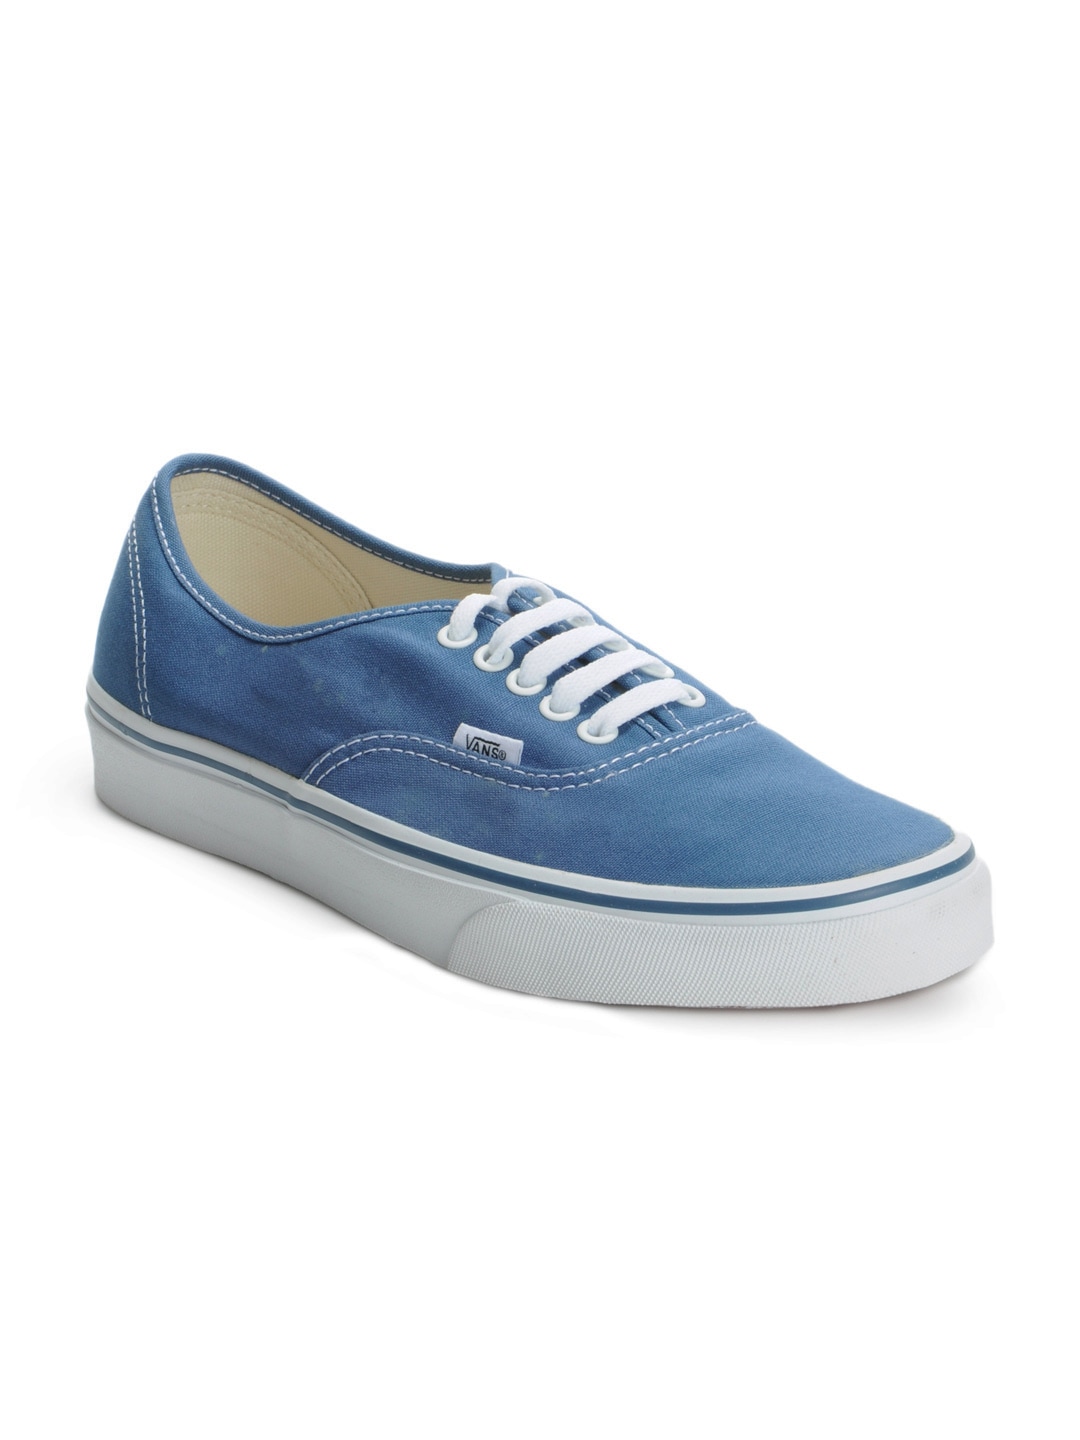 Vans Men Blue Casual Shoes